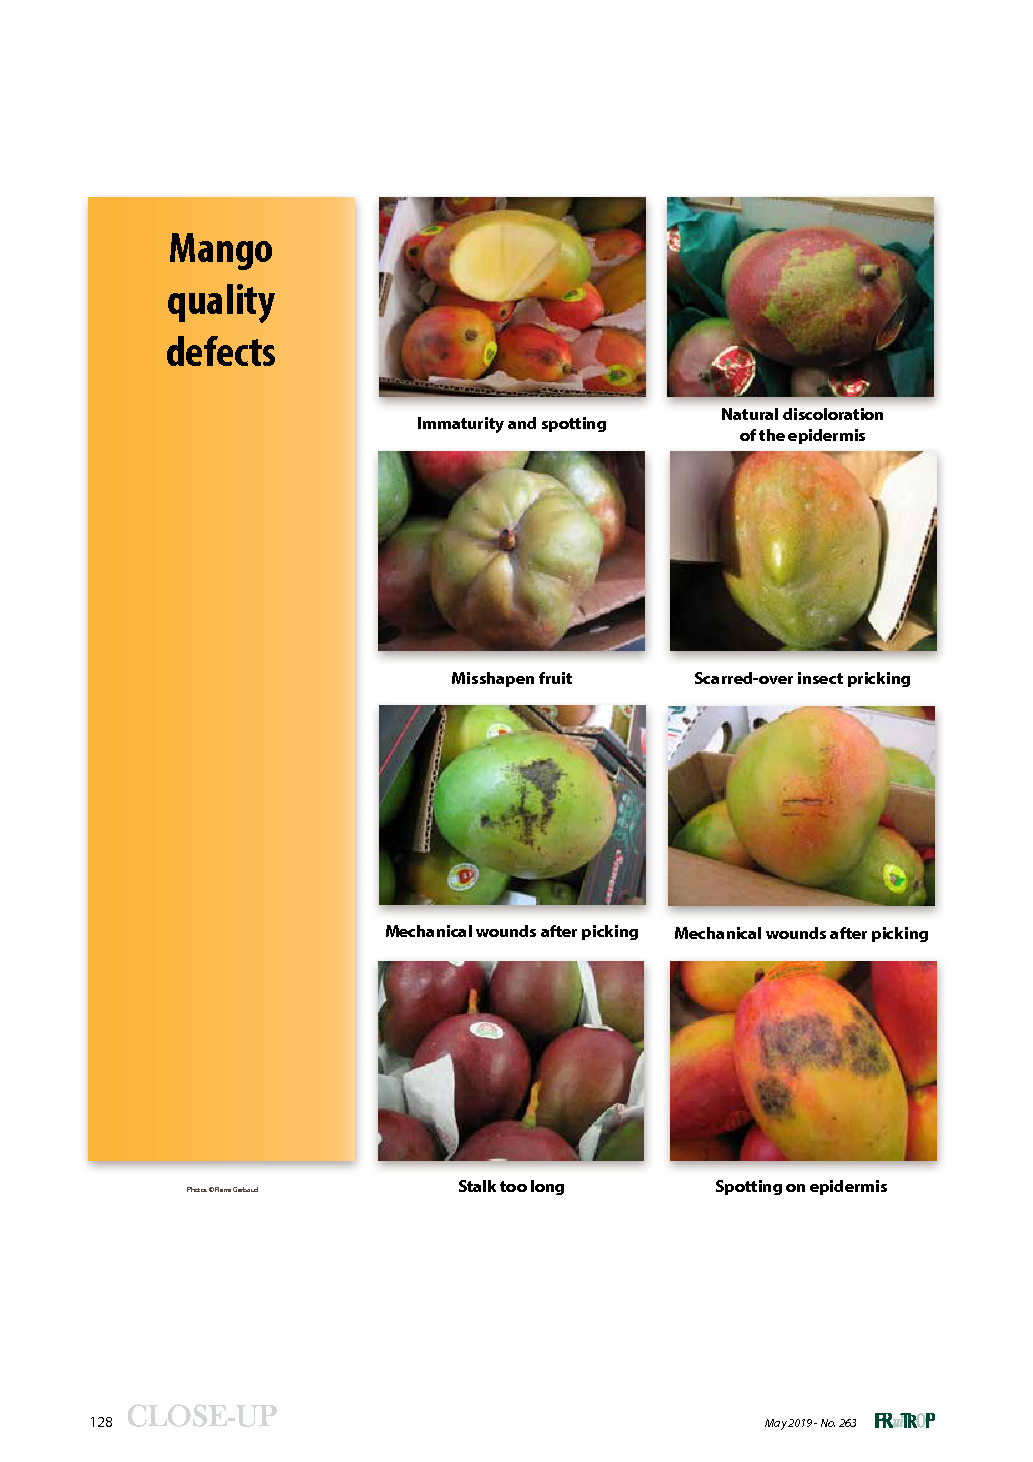 Mango quality defects